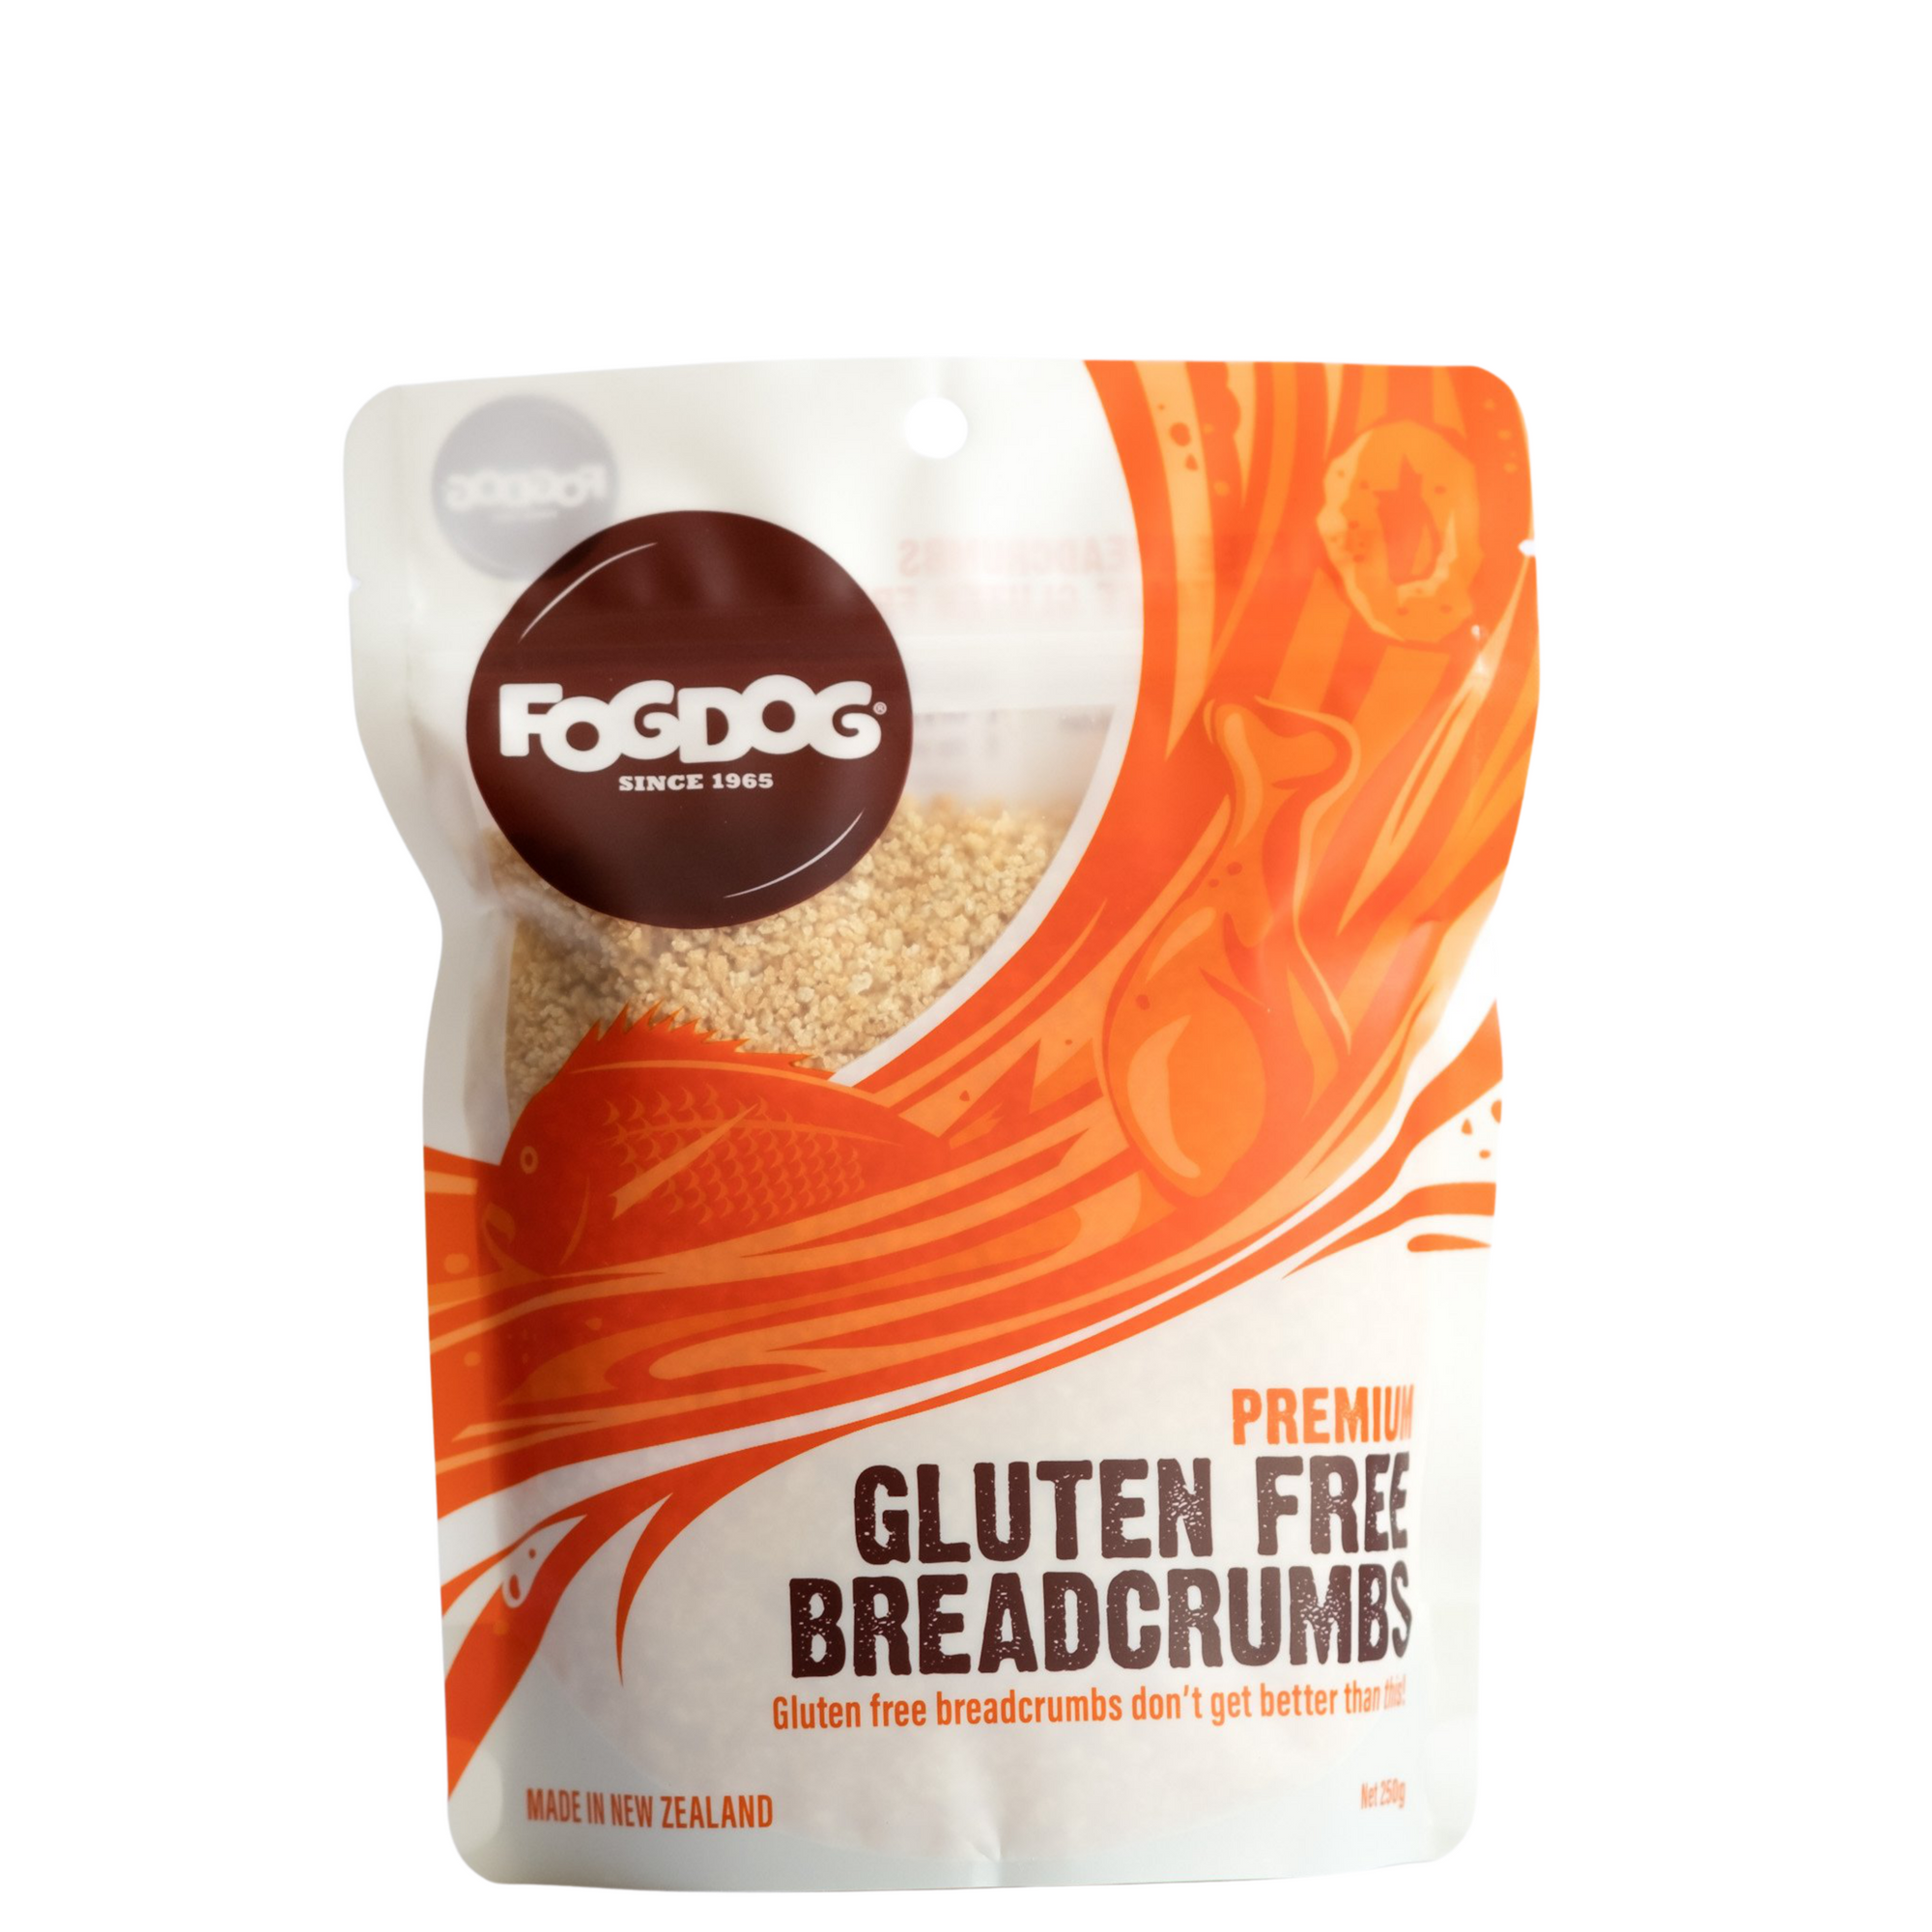 Fogdog Premium Gluten Free Breadcrumbs 250g